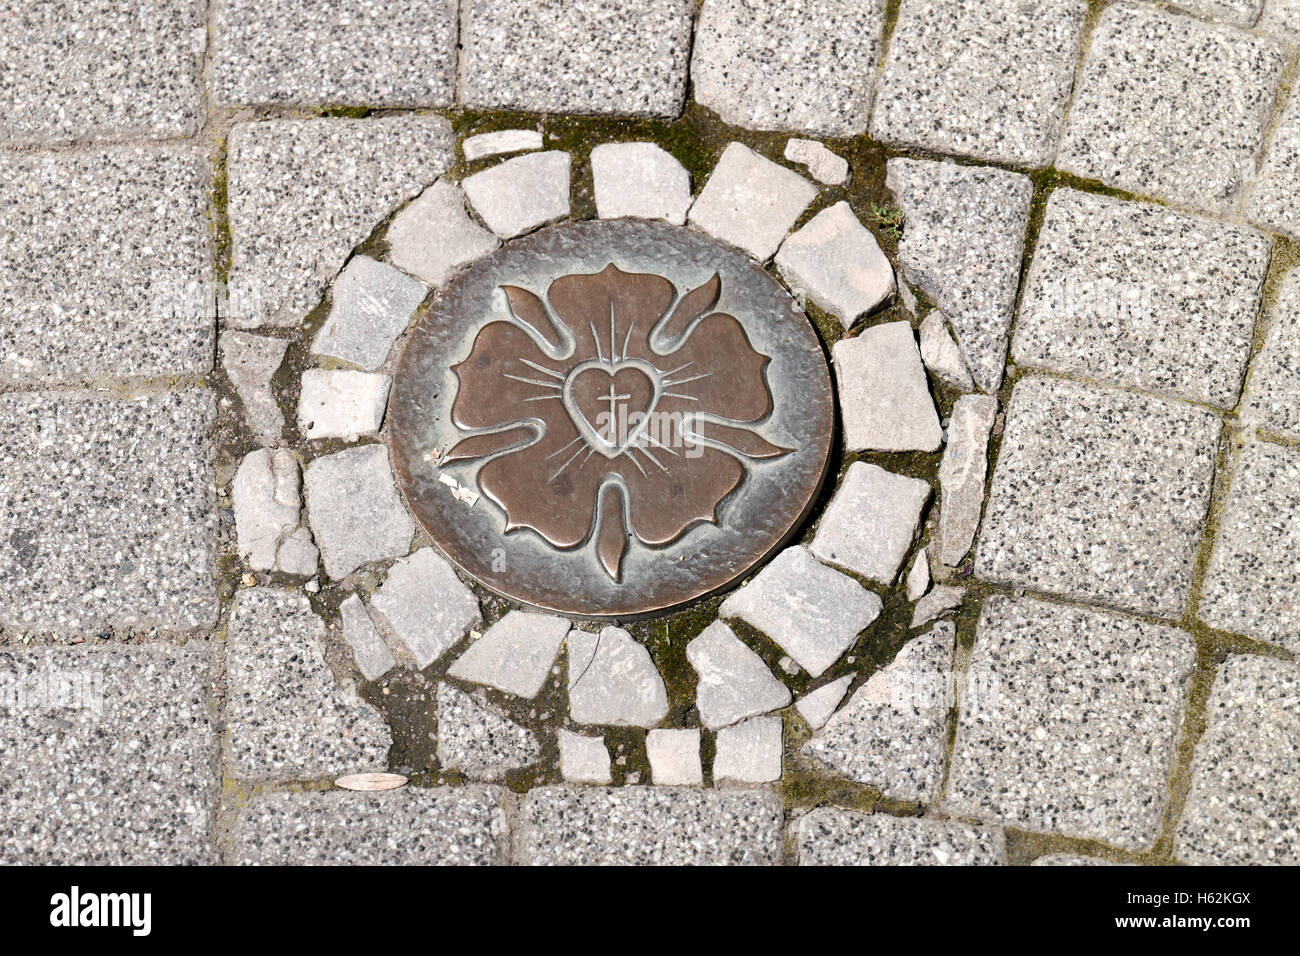 Eine Luther-rose ist auf dem Bürgersteig von Eisleben, Deutschland, 20. Juni 2016 ersichtlich. Die Luther-rose ist das Symbol der Evnagelical-lutherischen Kirche und das Siegel der Martin-Luther Briefe ab 1530. Foto: Peter Endig Stockfoto